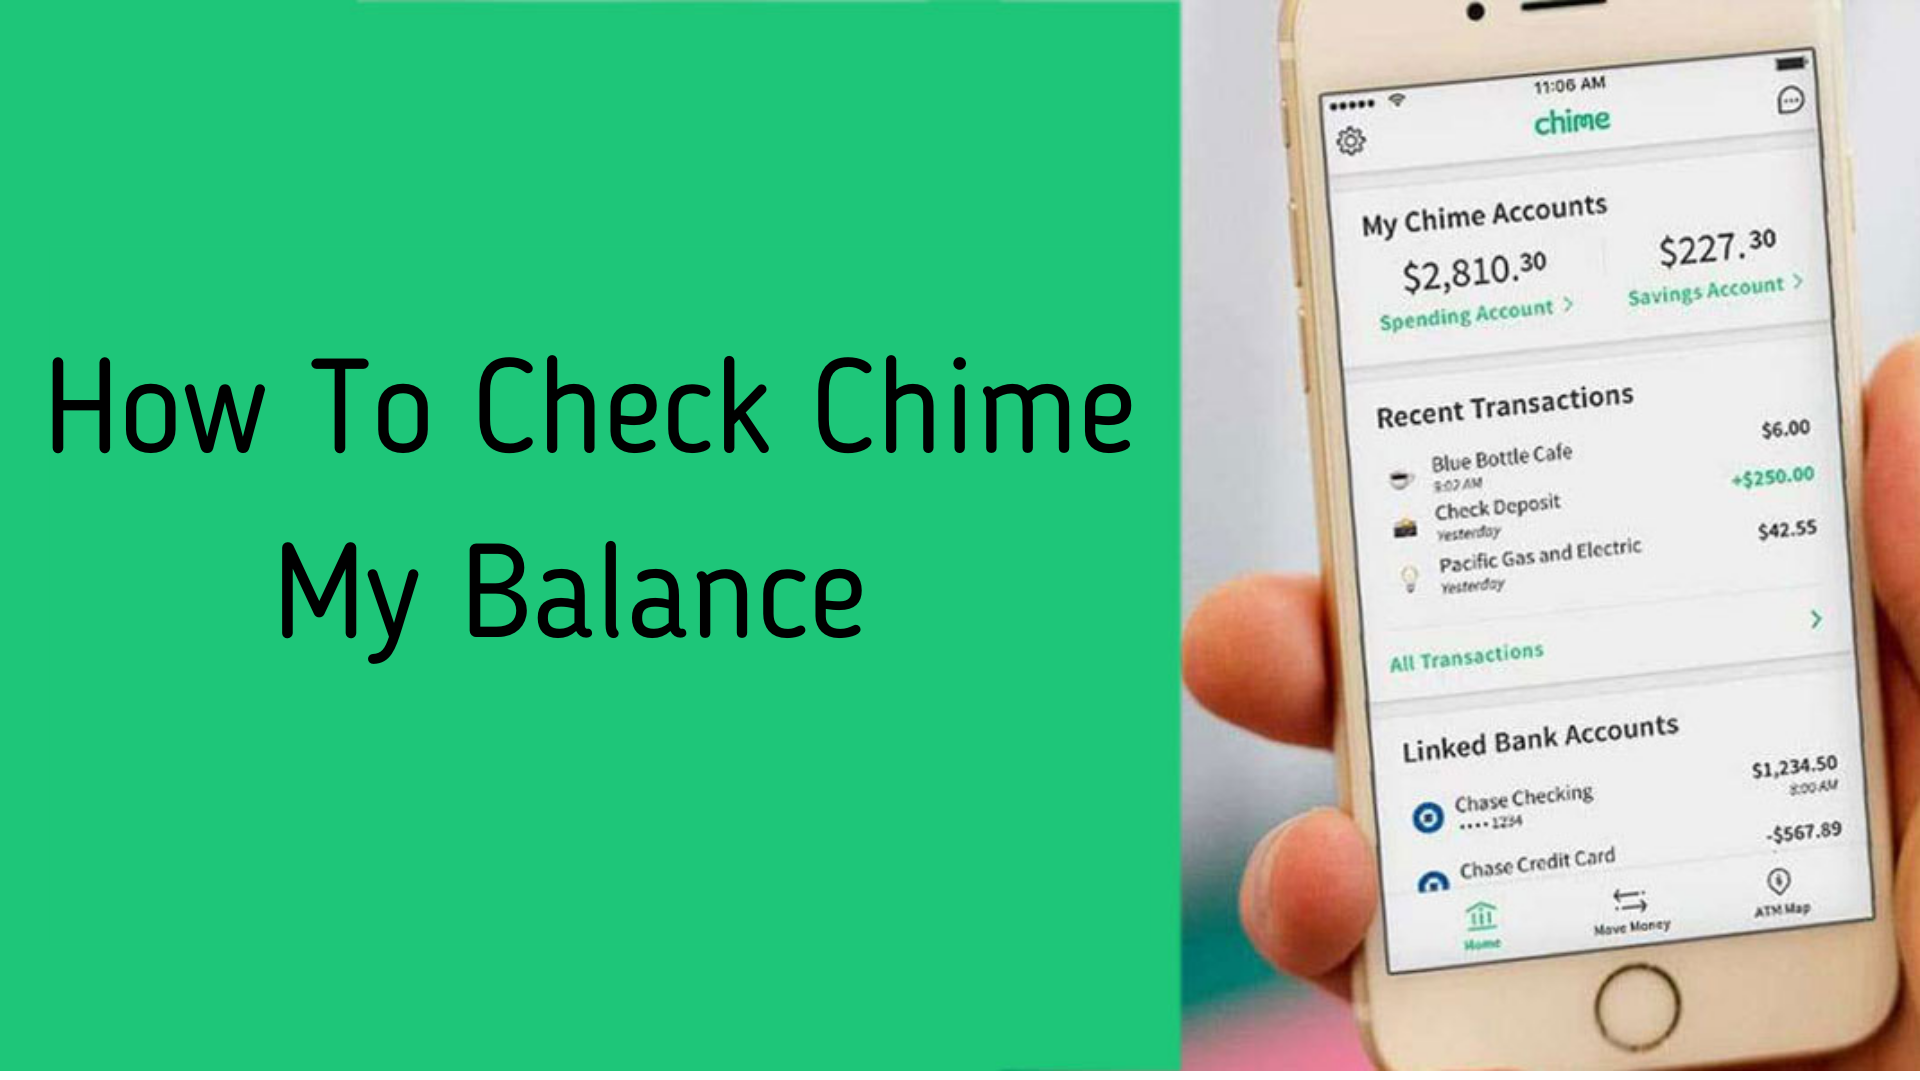 Check chime balance